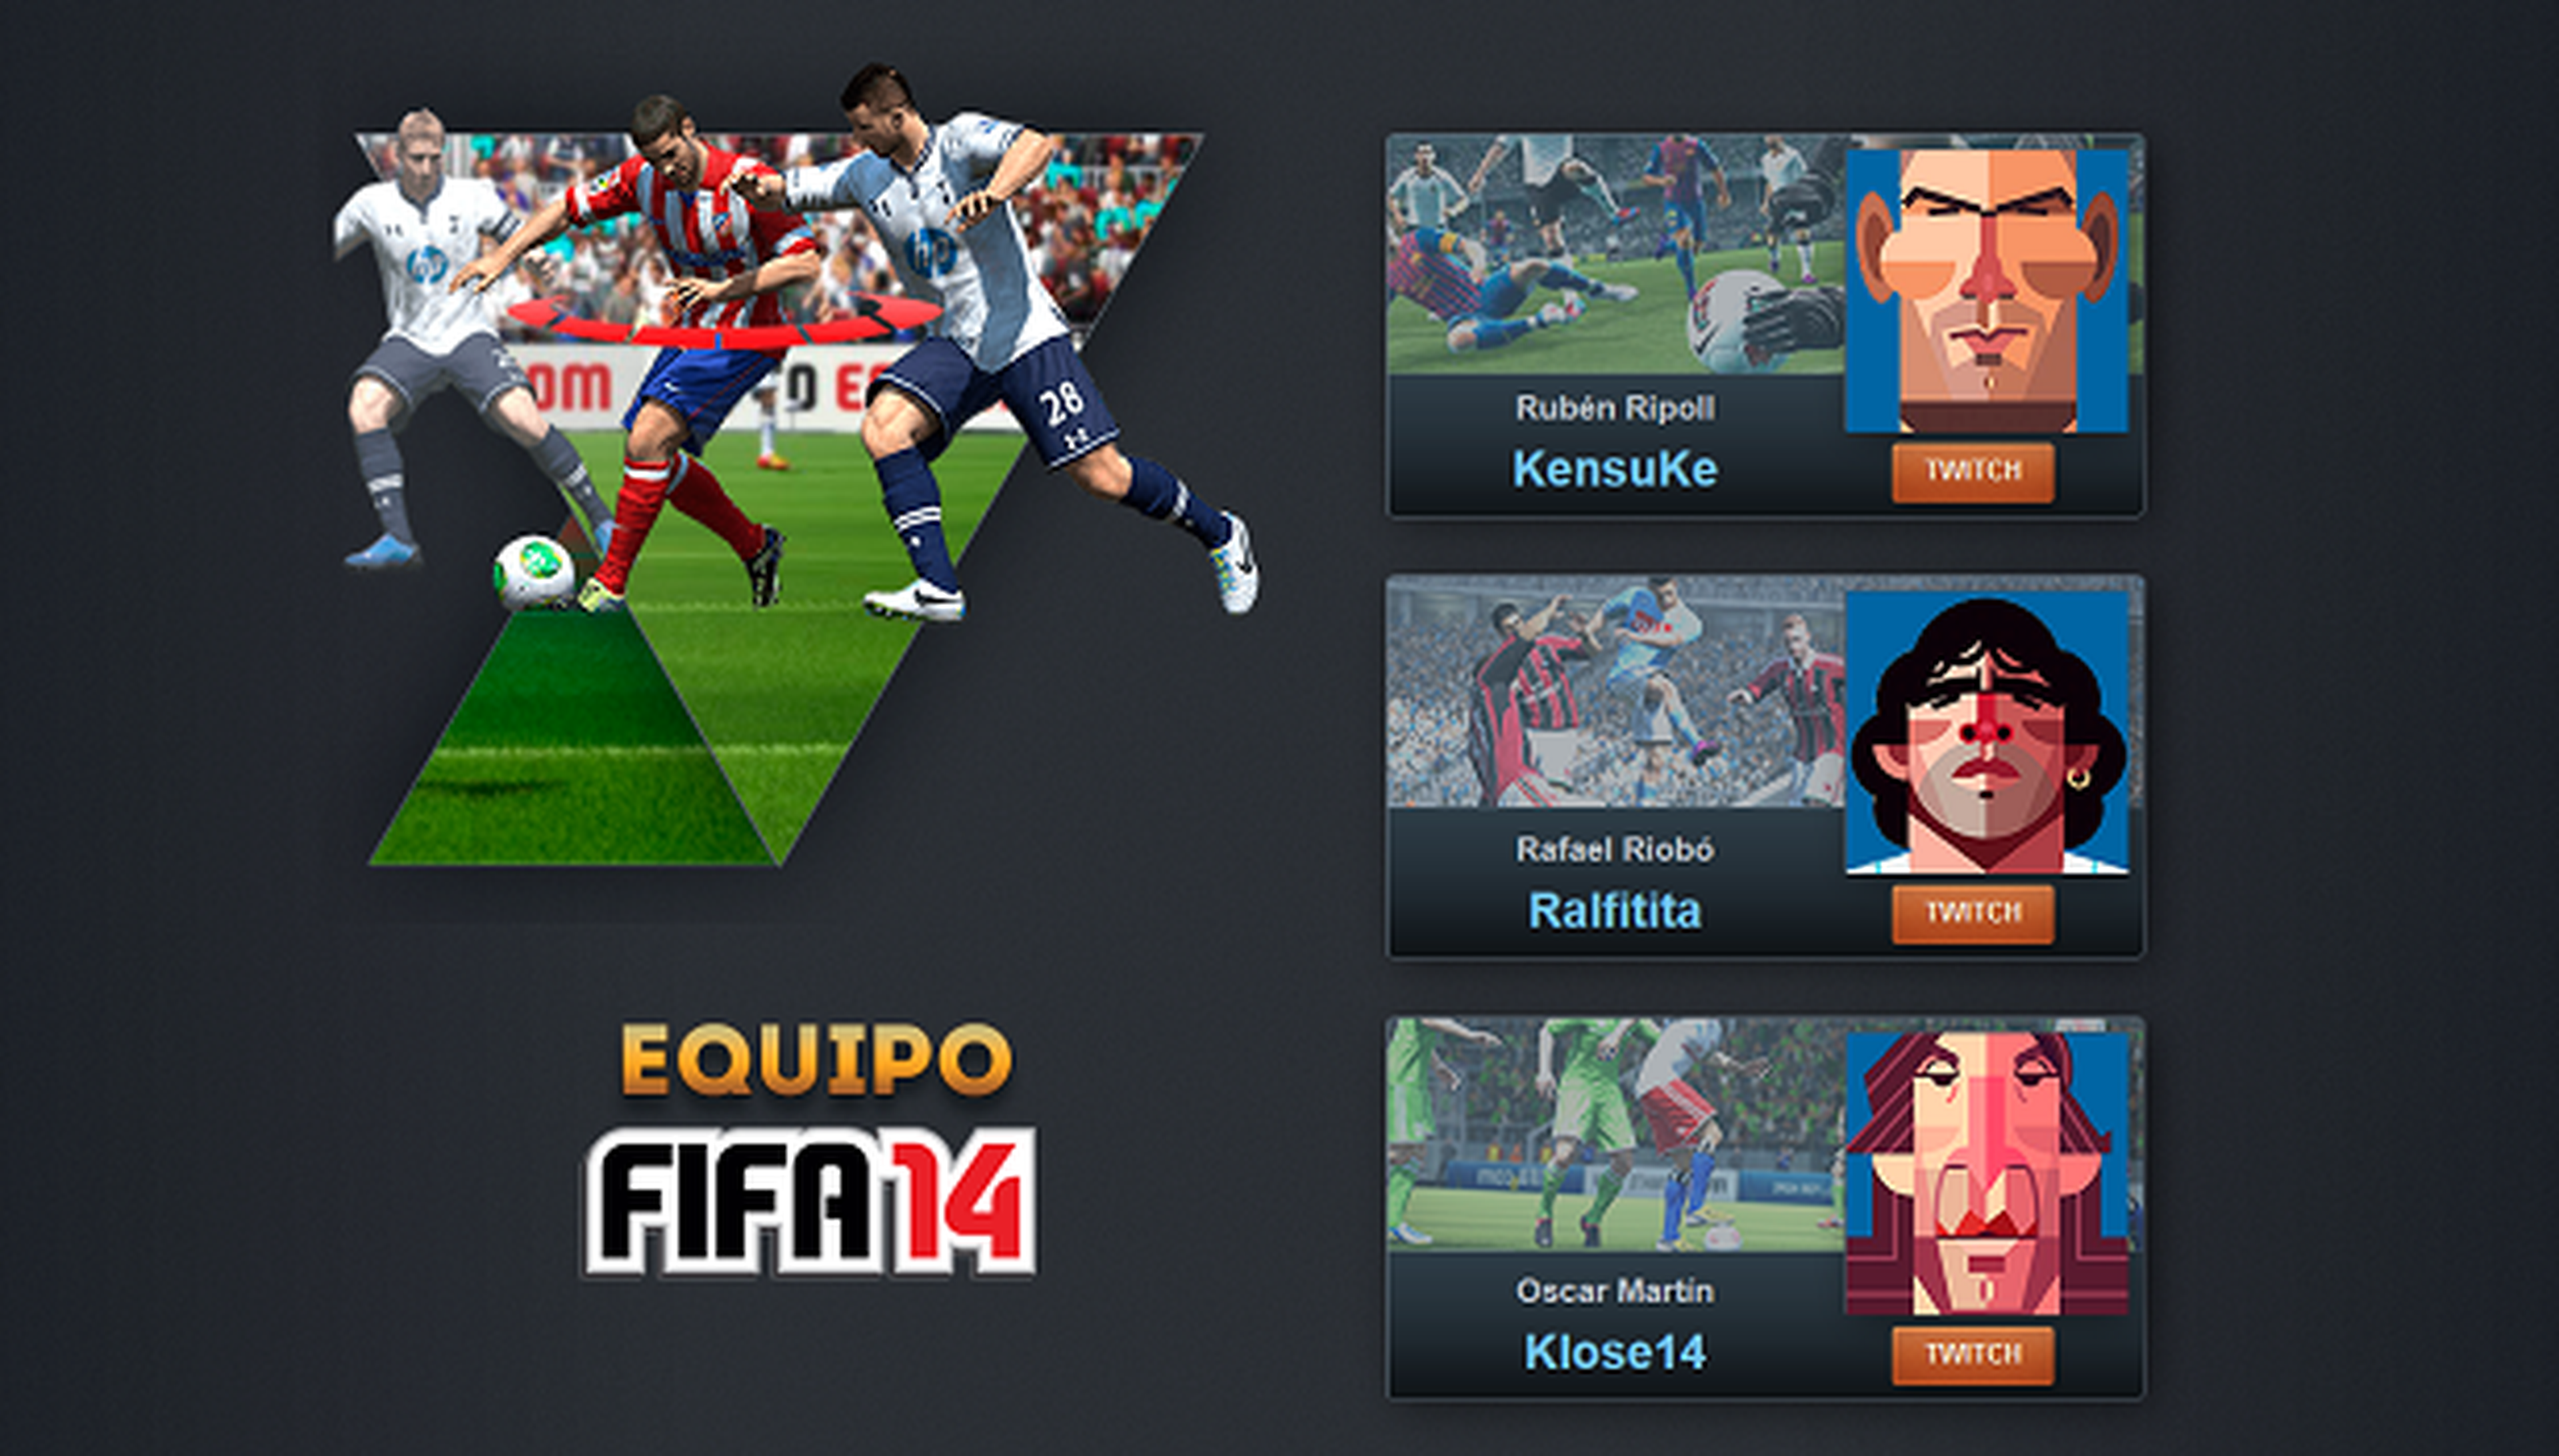 Gaming eSports presenta a su equipo de FIFA 14